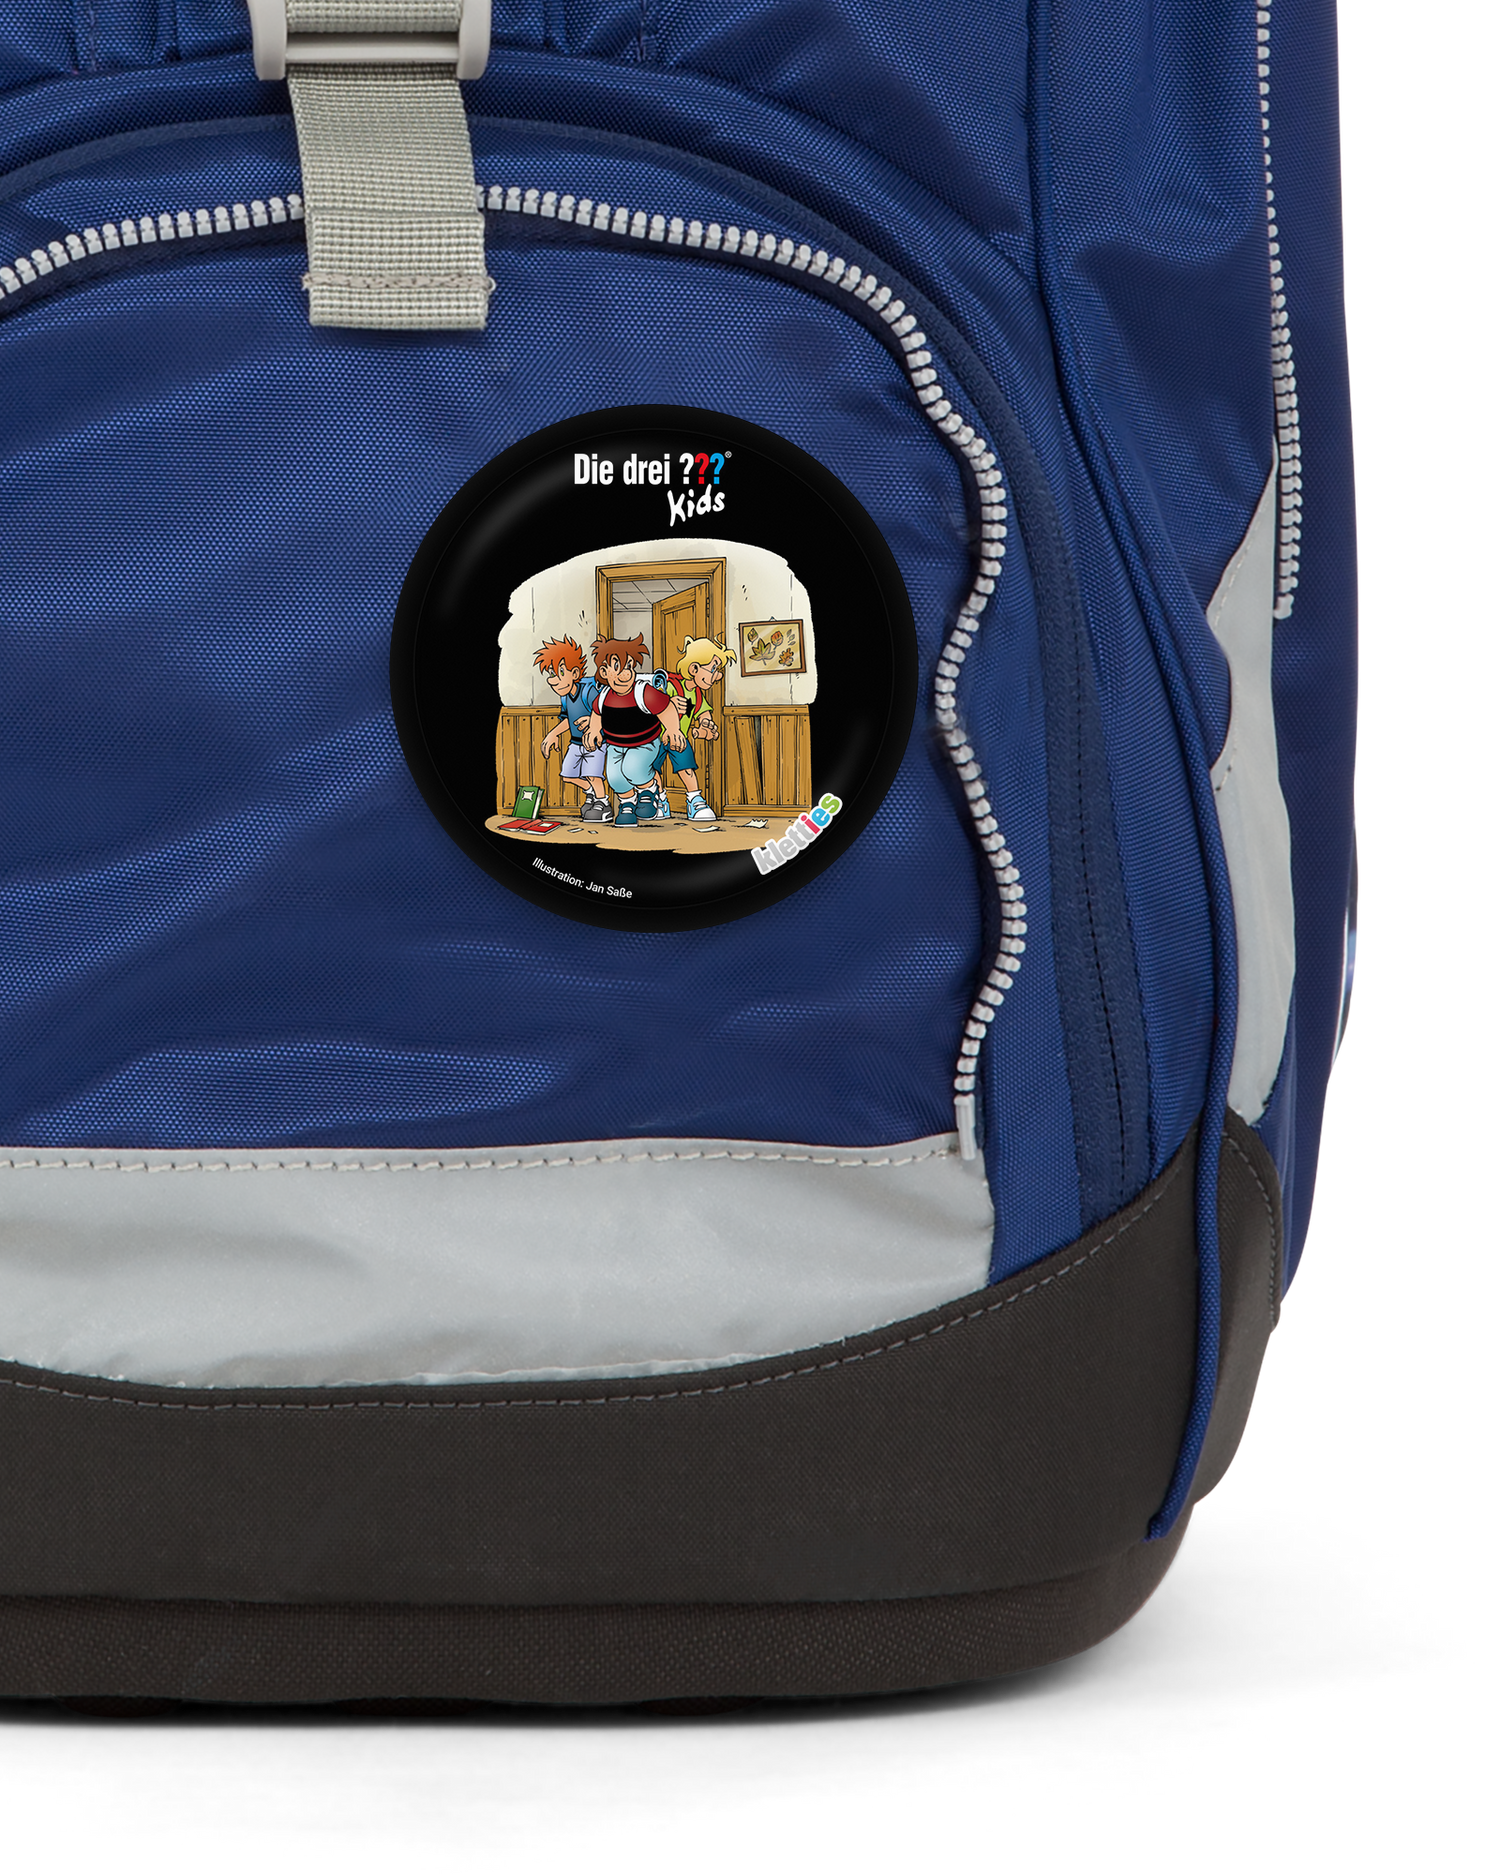 Die Drei Fragezeichen Schule Klettie: Detail shot on an ergobag backpack